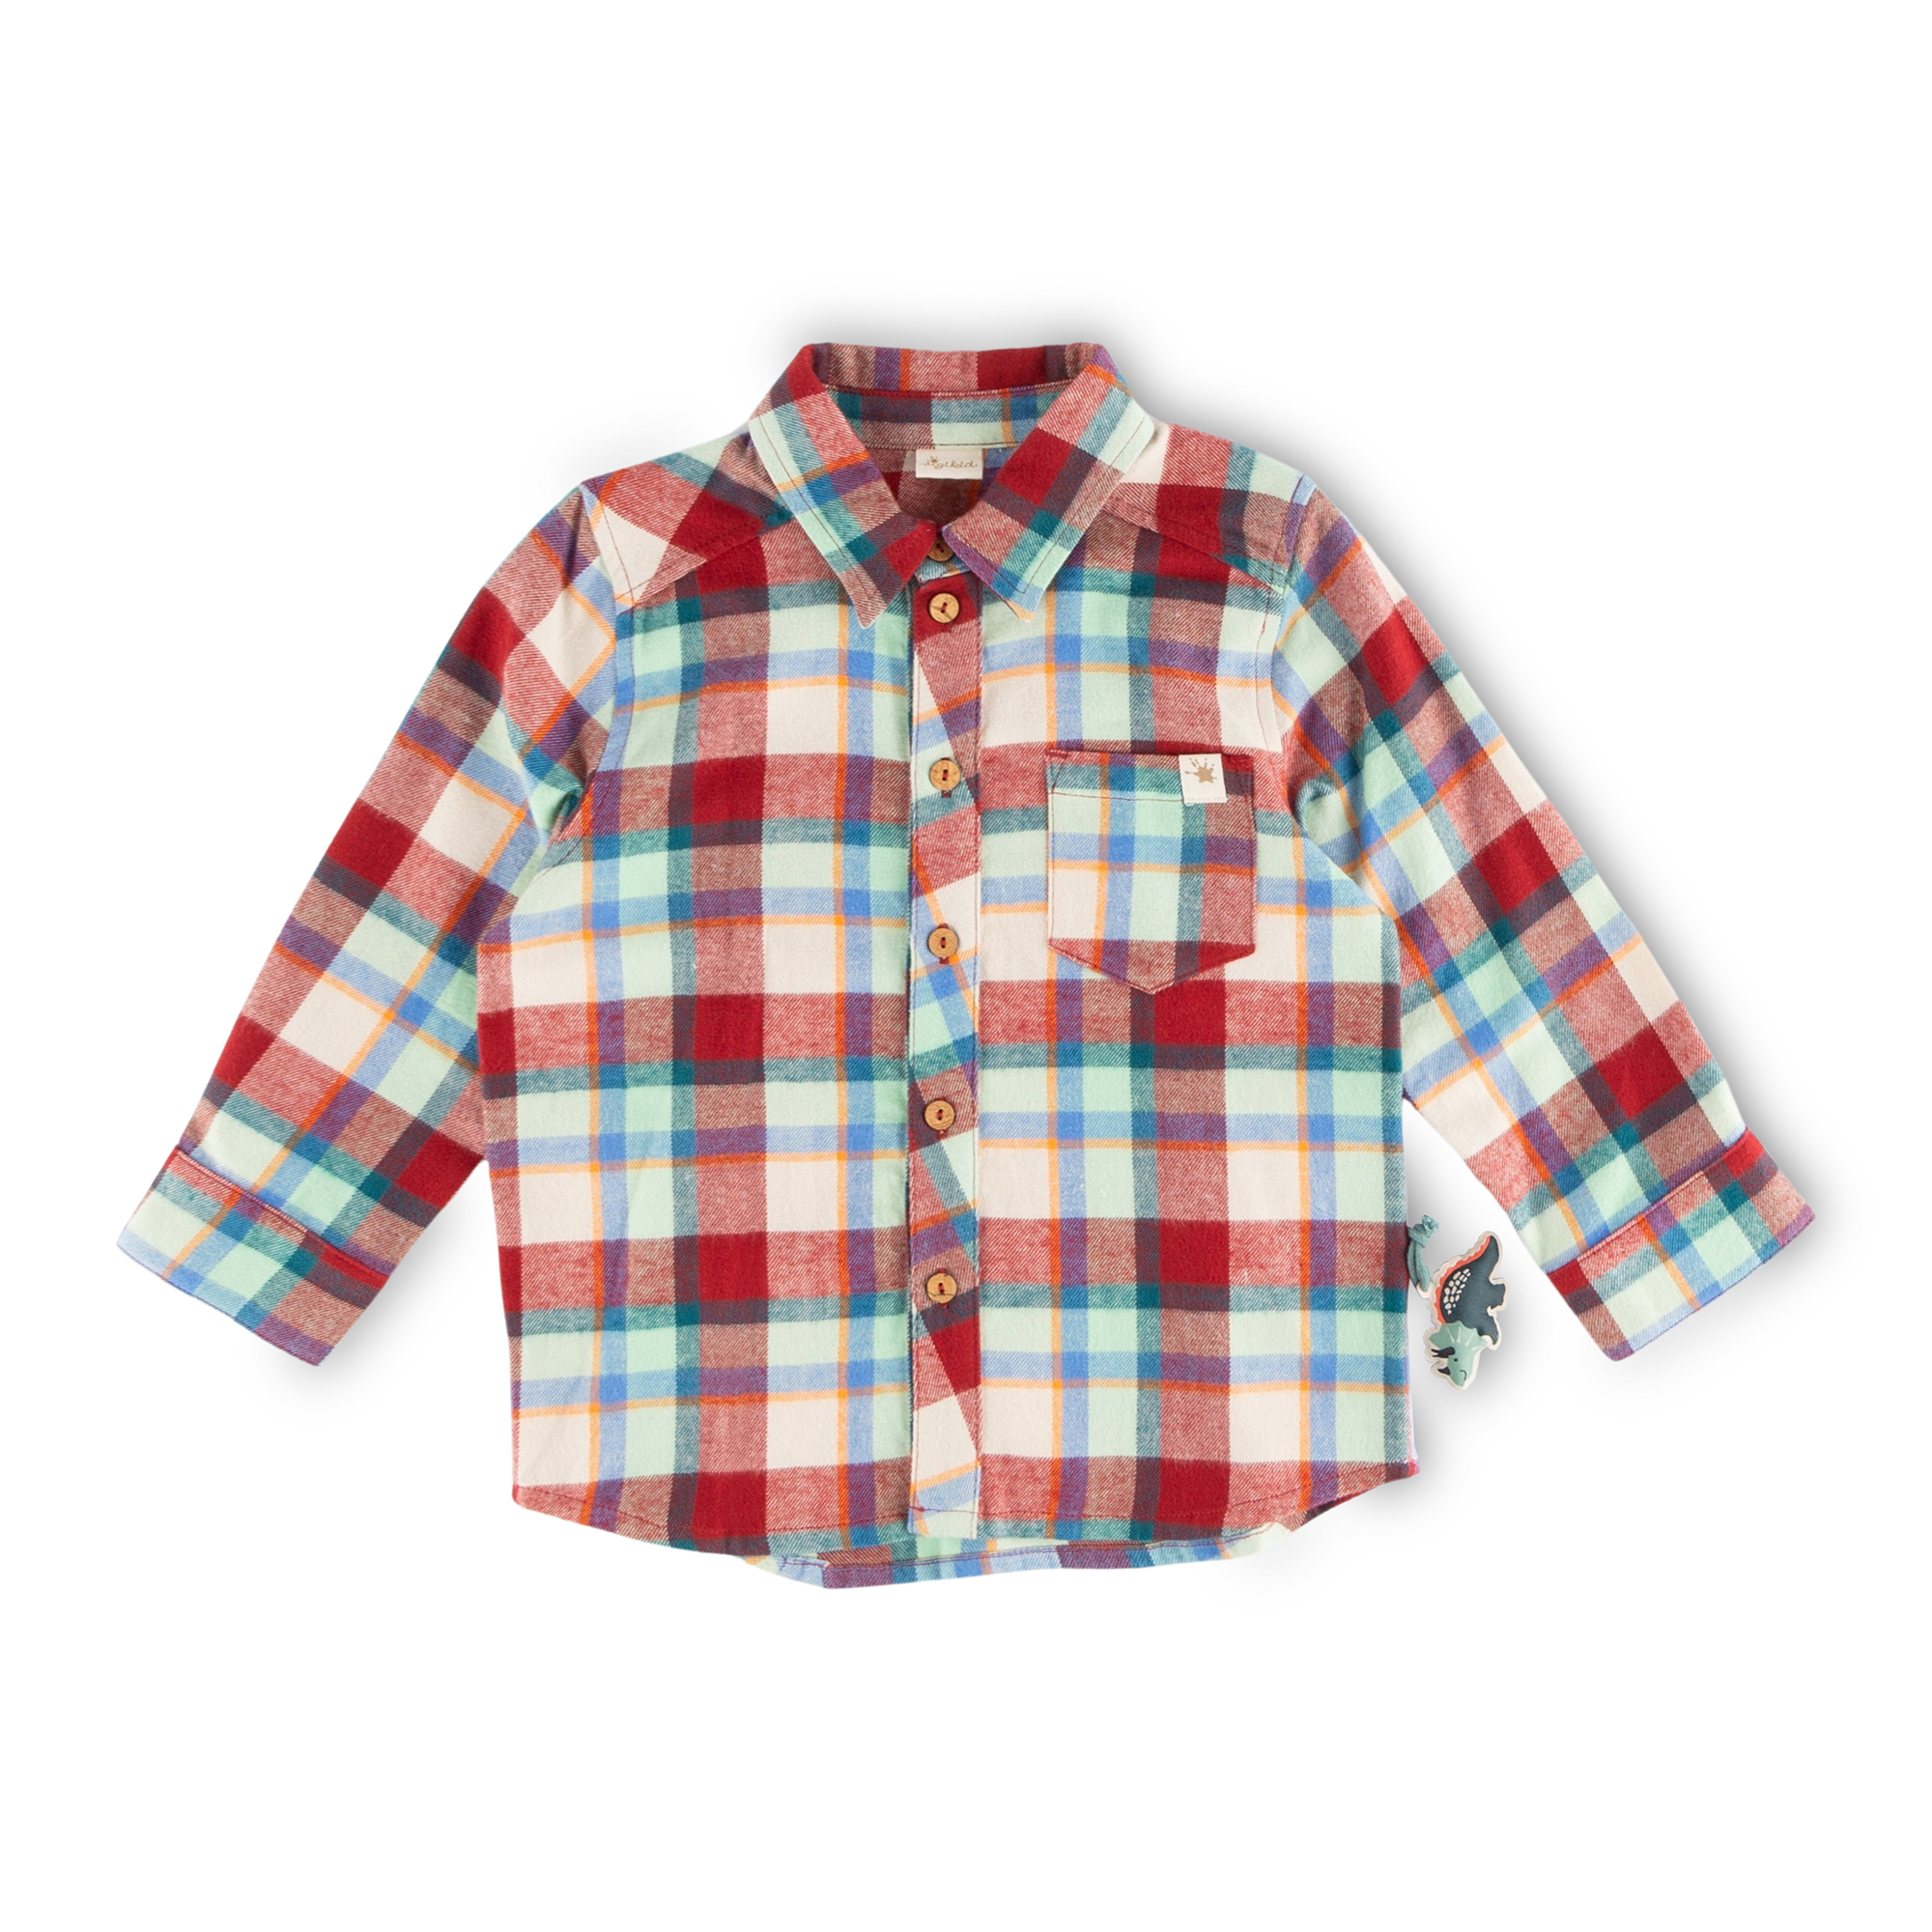 Children's boys' check flannel shirt dark red